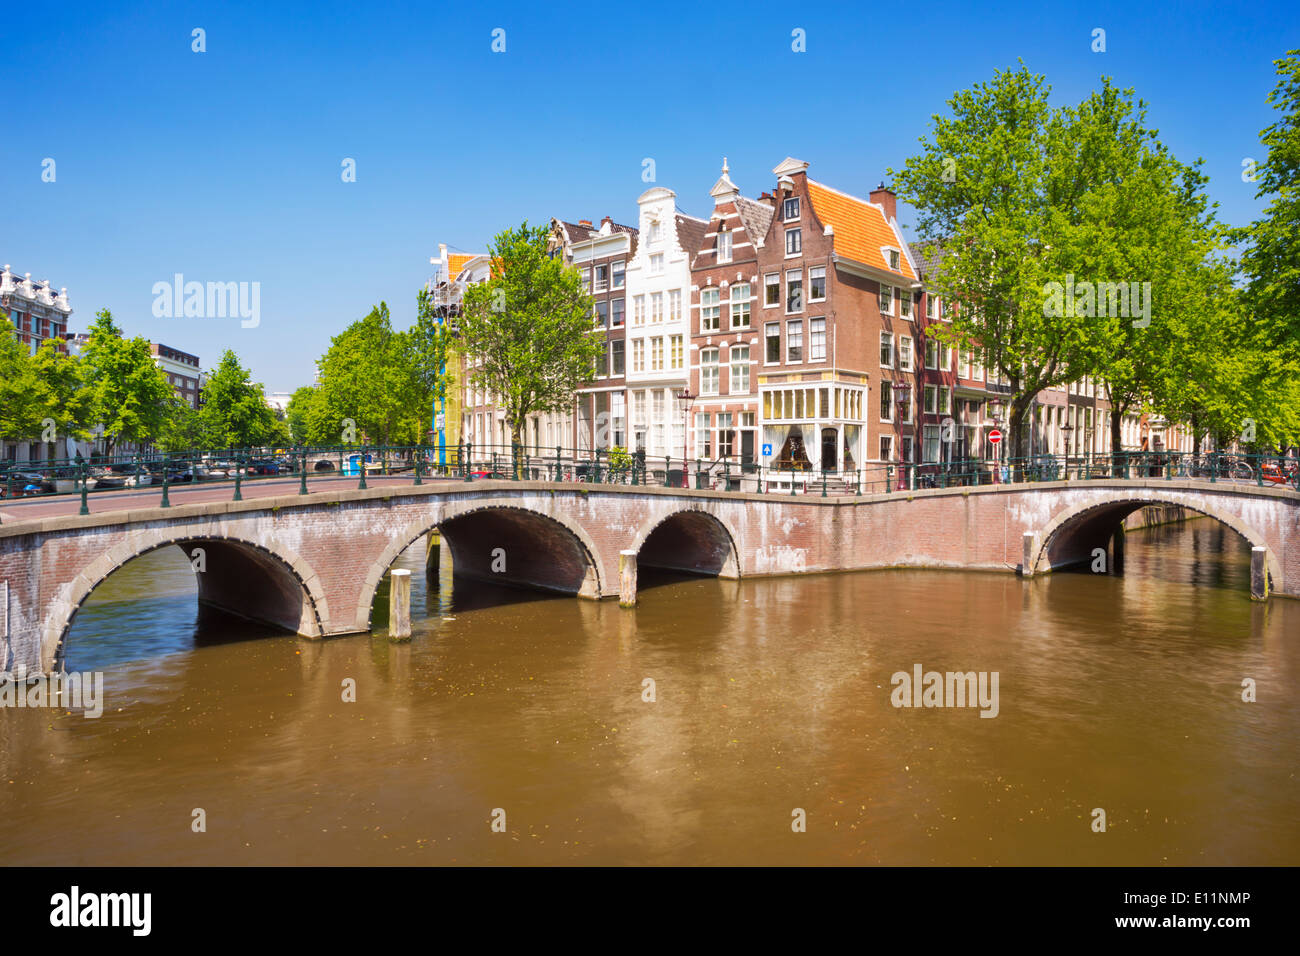 Brücken und Häuser an einem Kanal in der Stadt Amsterdam in den Niederlanden an einem schönen sonnigen Tag Stockfoto